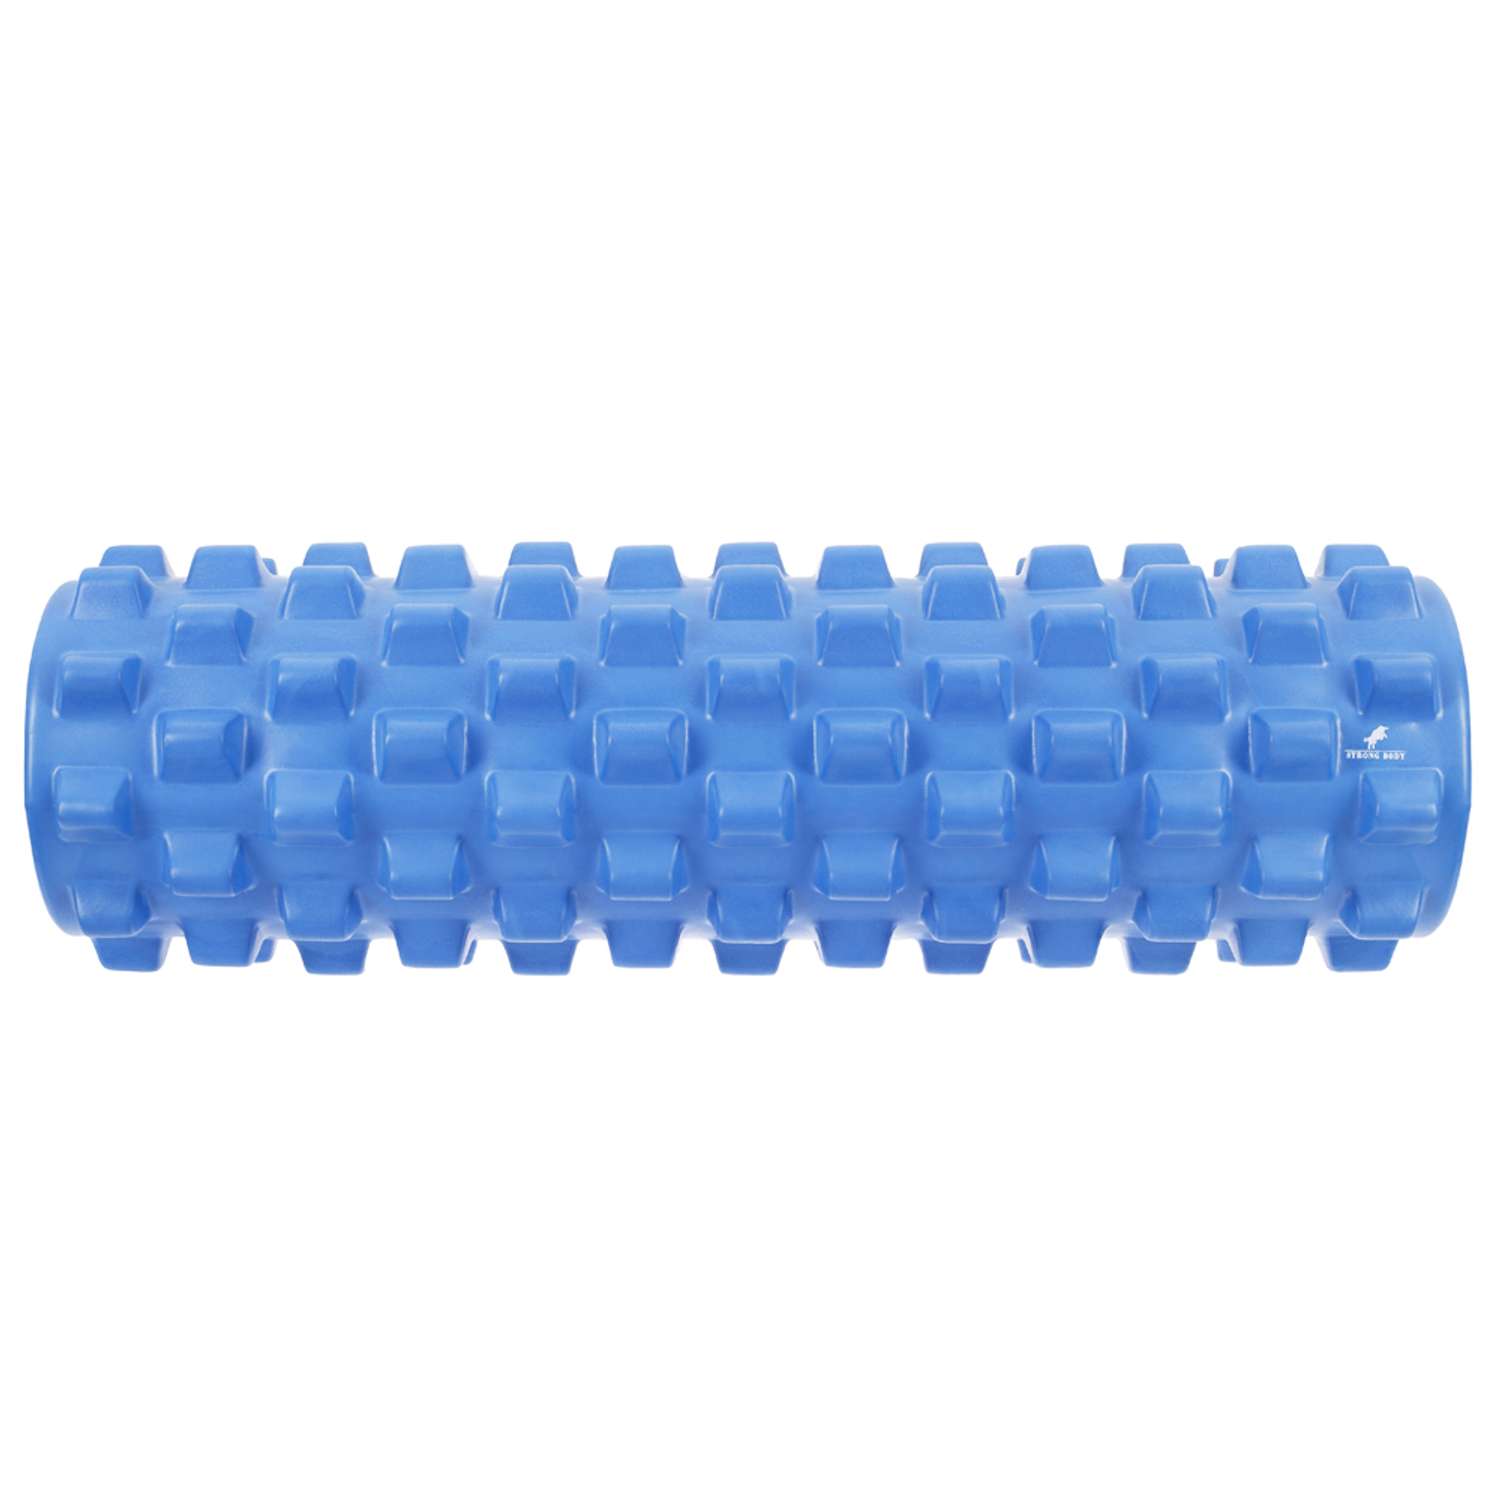 Ролик массажный STRONG BODY с шипами спортивный для фитнеса МФР йоги и пилатеса 45х14 см синий - фото 3